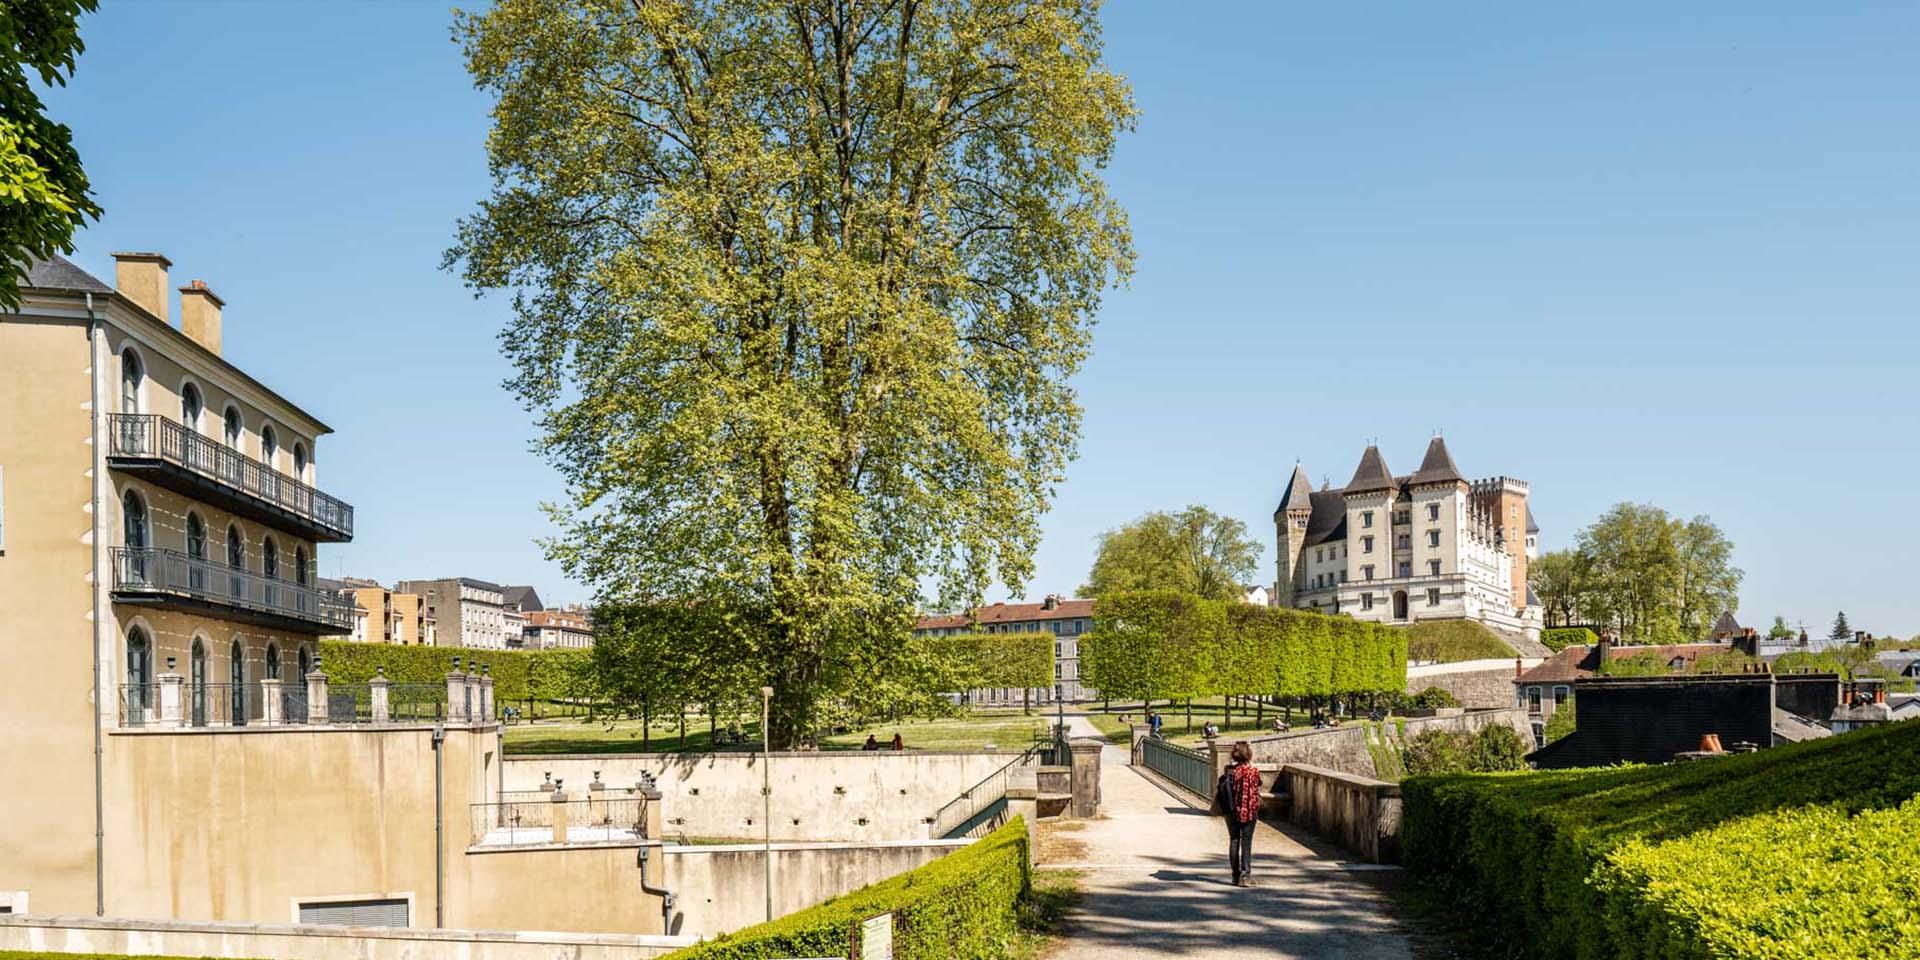 Article Obtention du Label Jardin remarquable Château de Pau